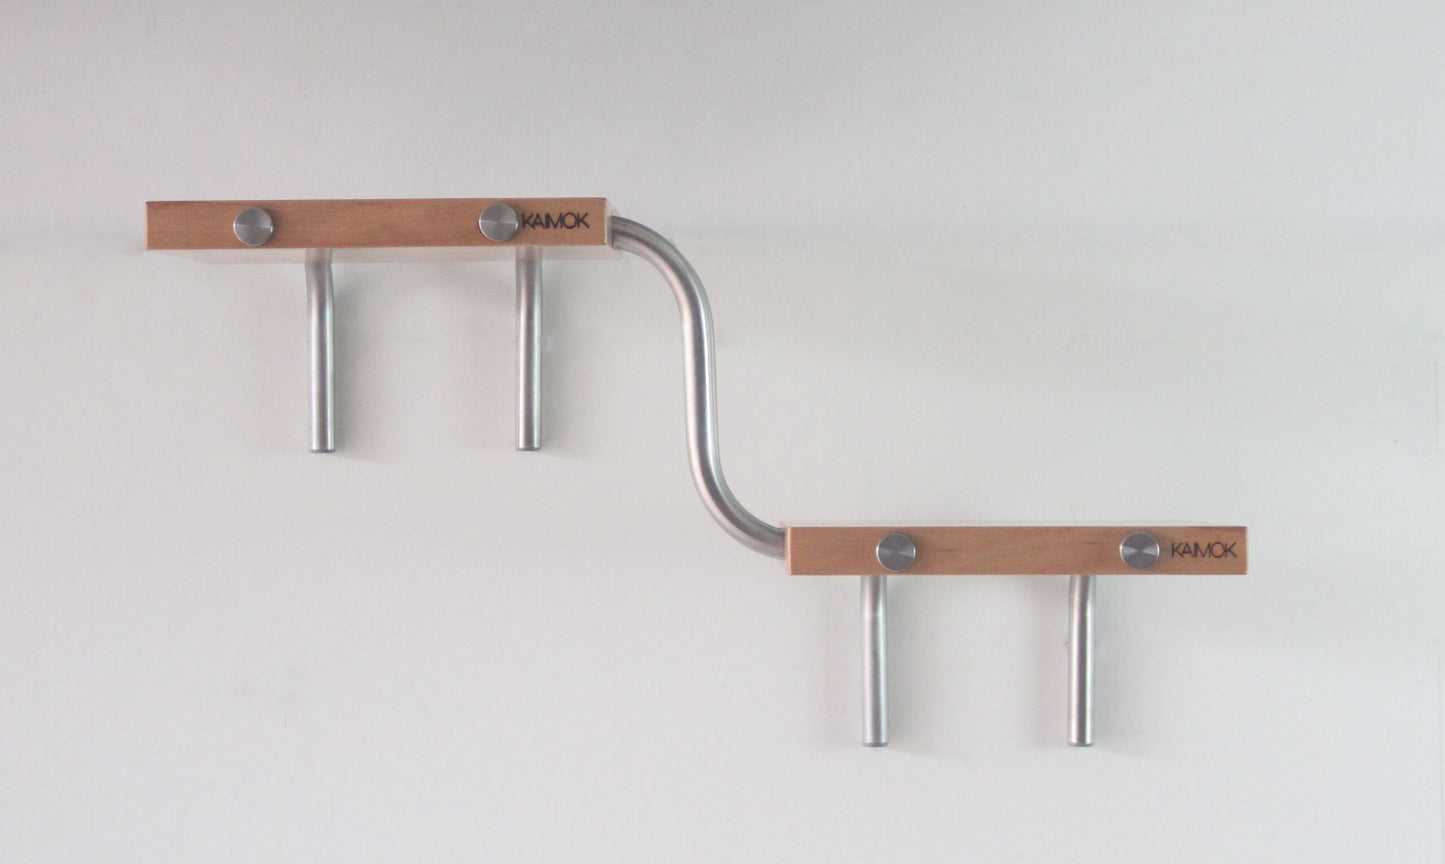 BCN Modular - Haya - soporte de bicicleta - estantes de madera - Kaimok Design